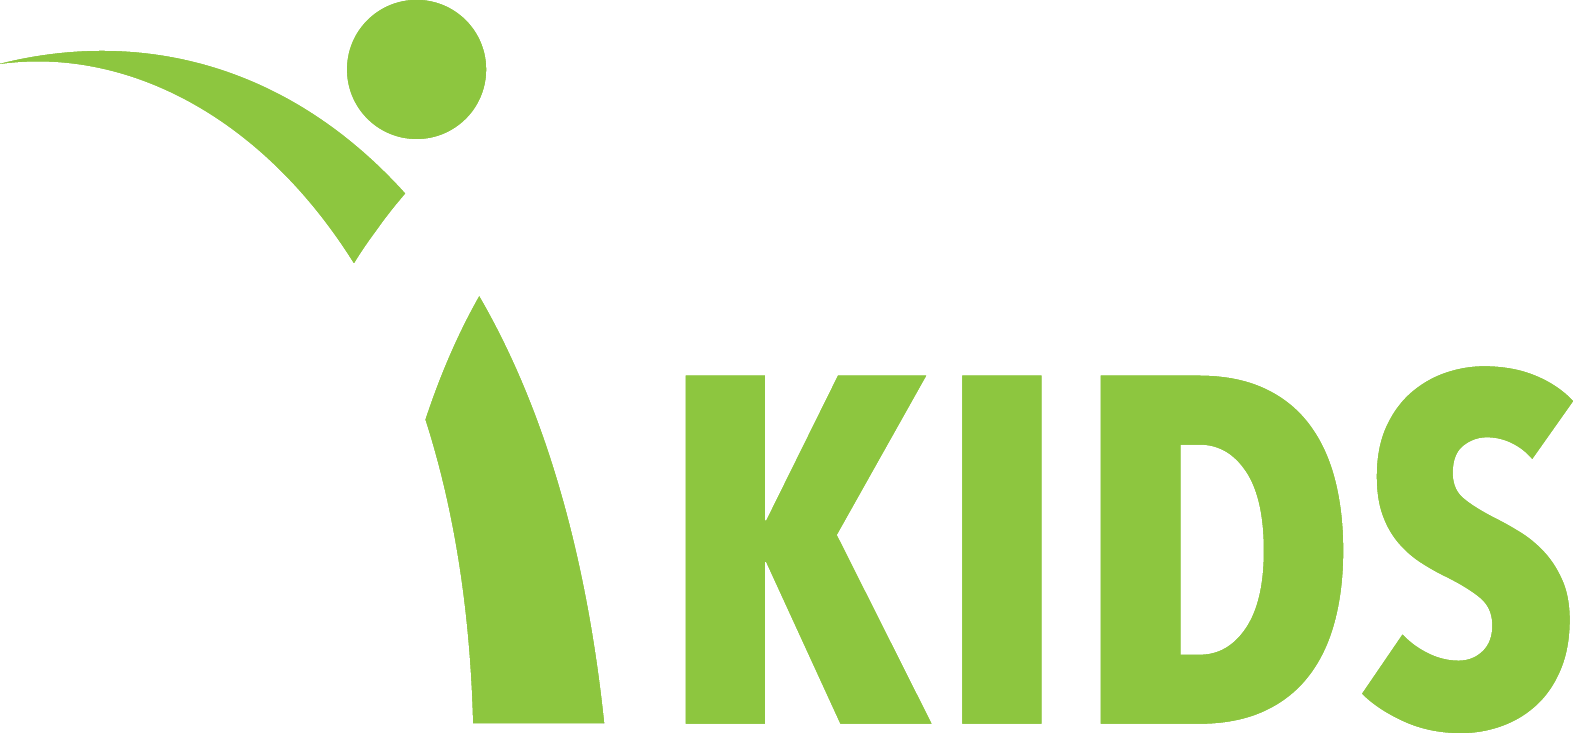 resilient logo white